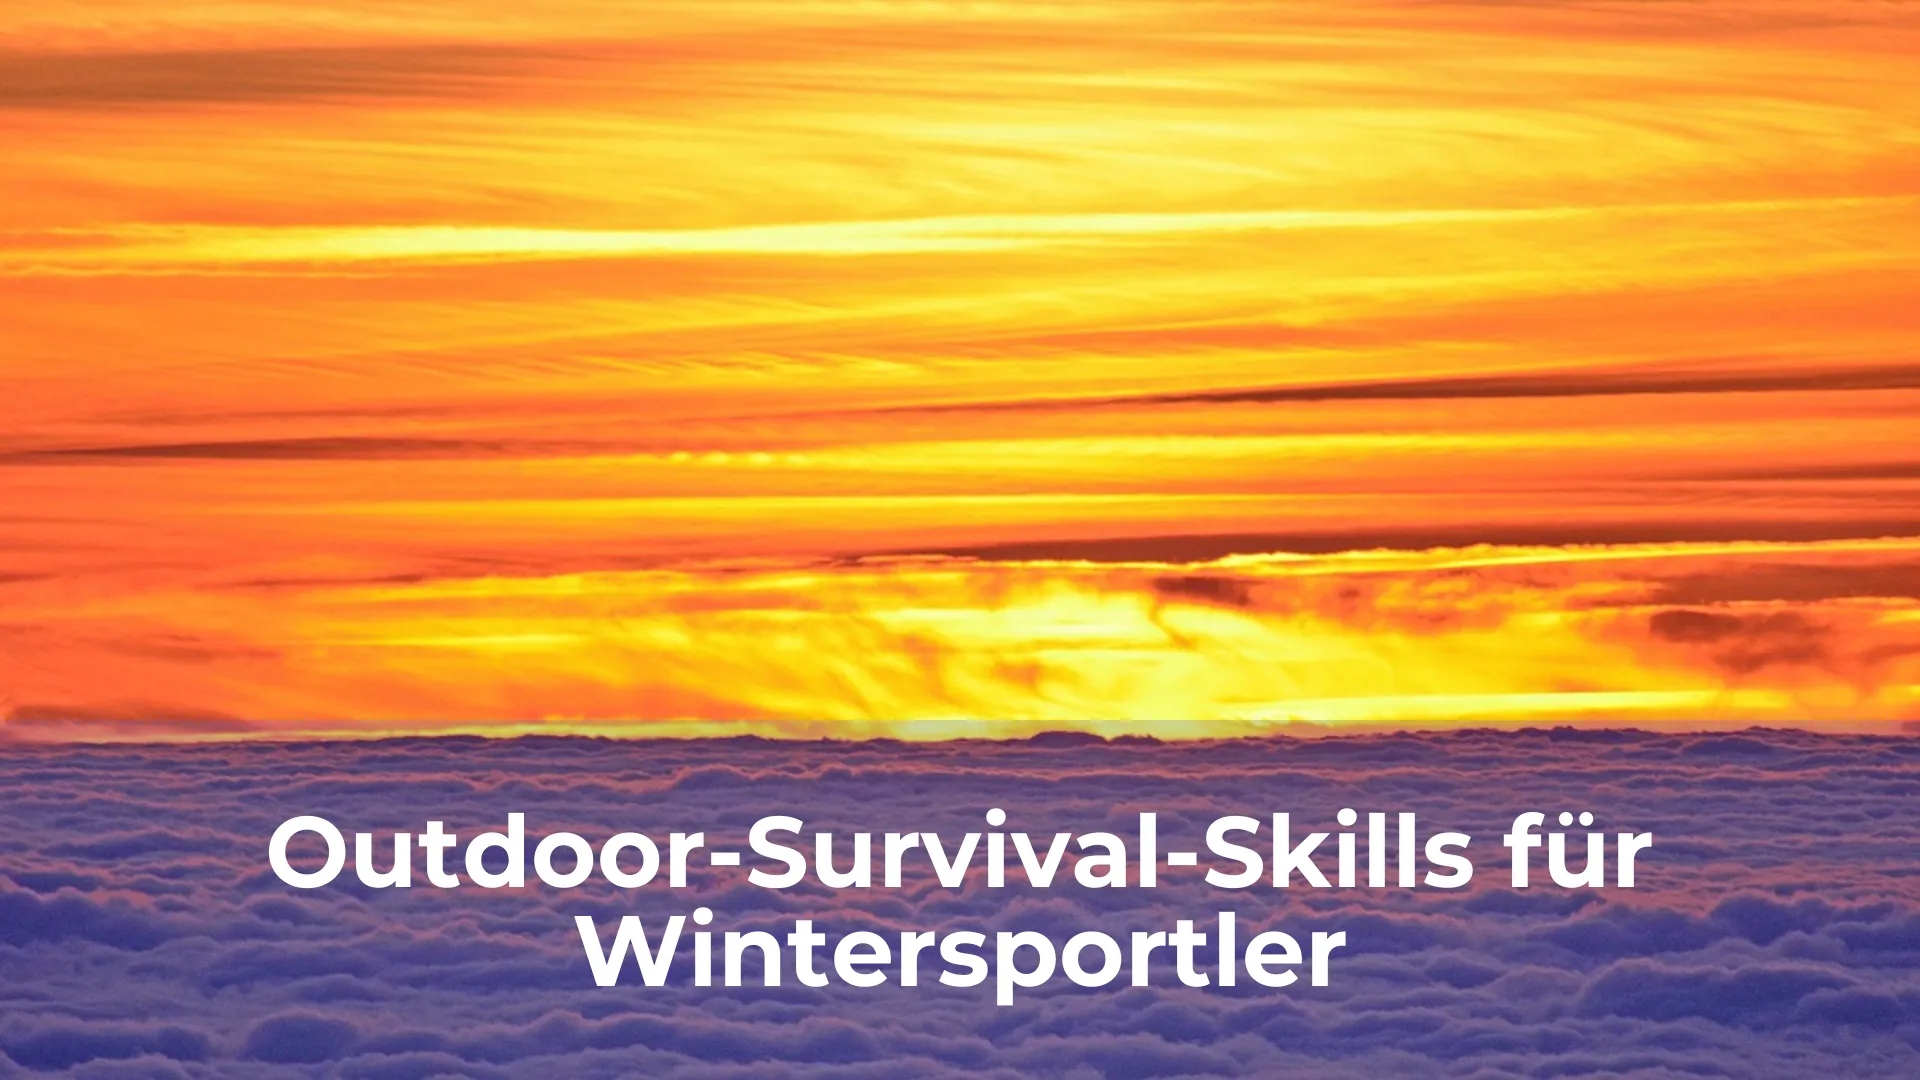 Outdoor survival skills für wintersportler